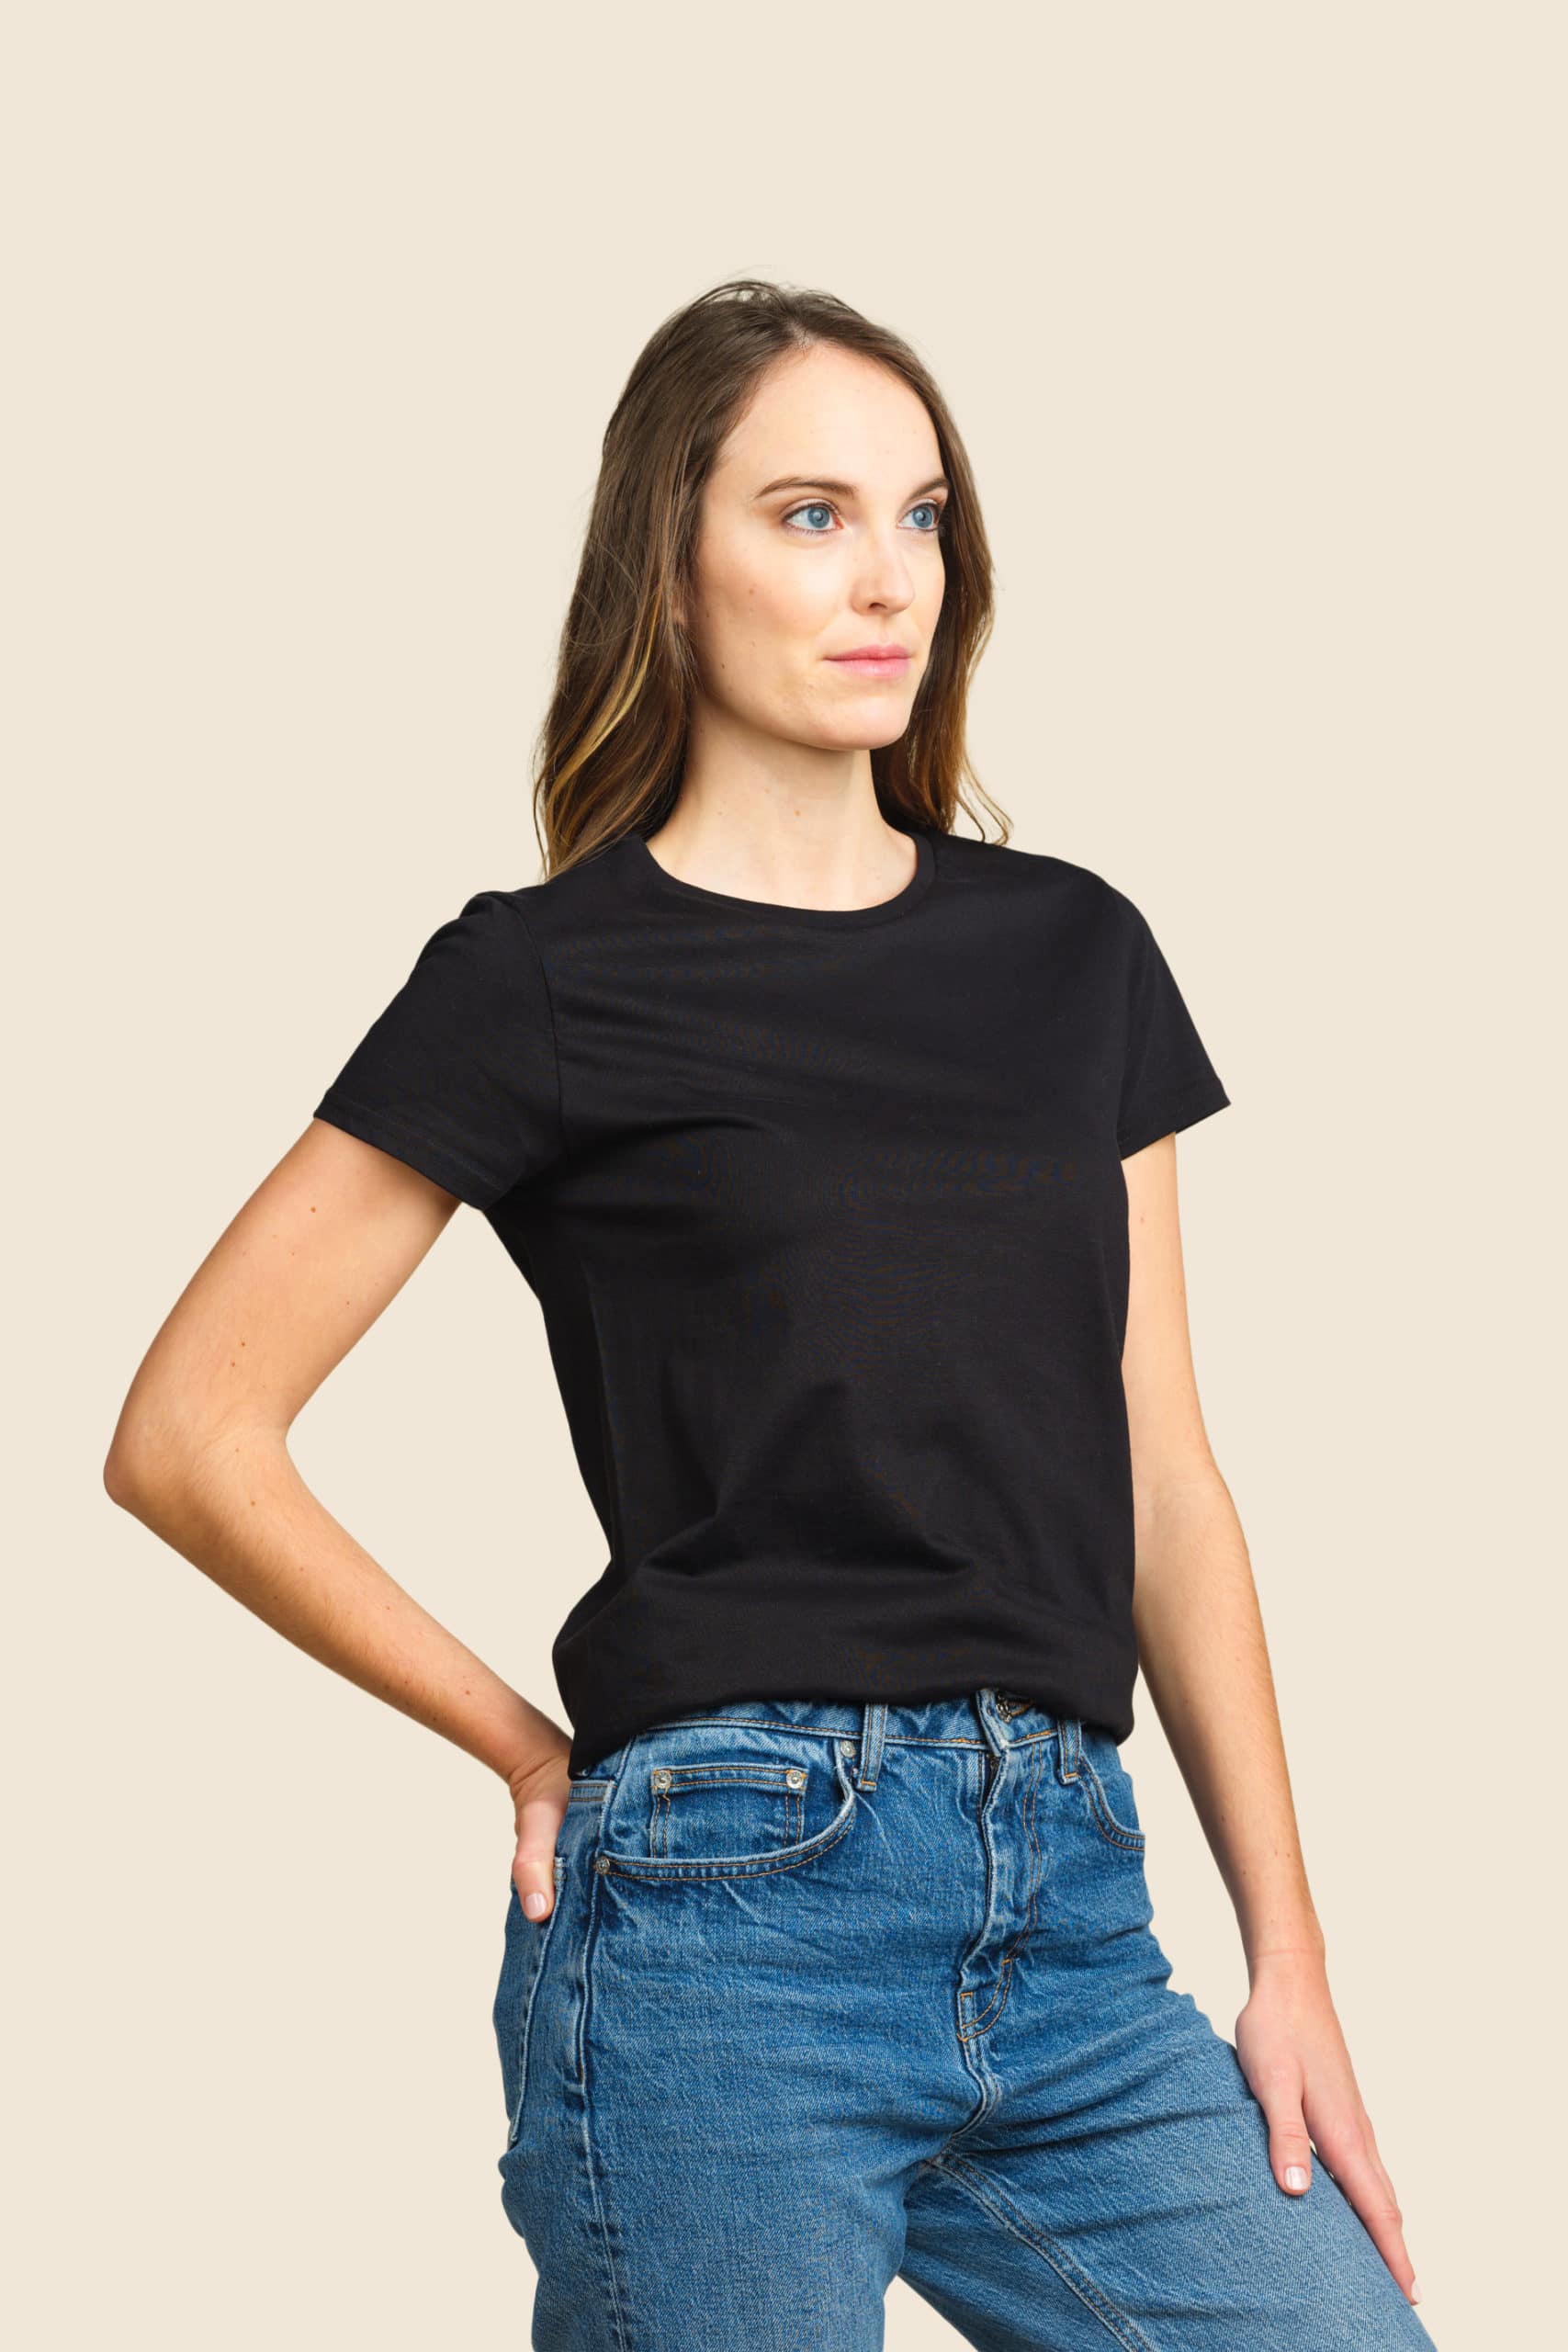 t-shirt bio épais femme personnalisable - Icone Design